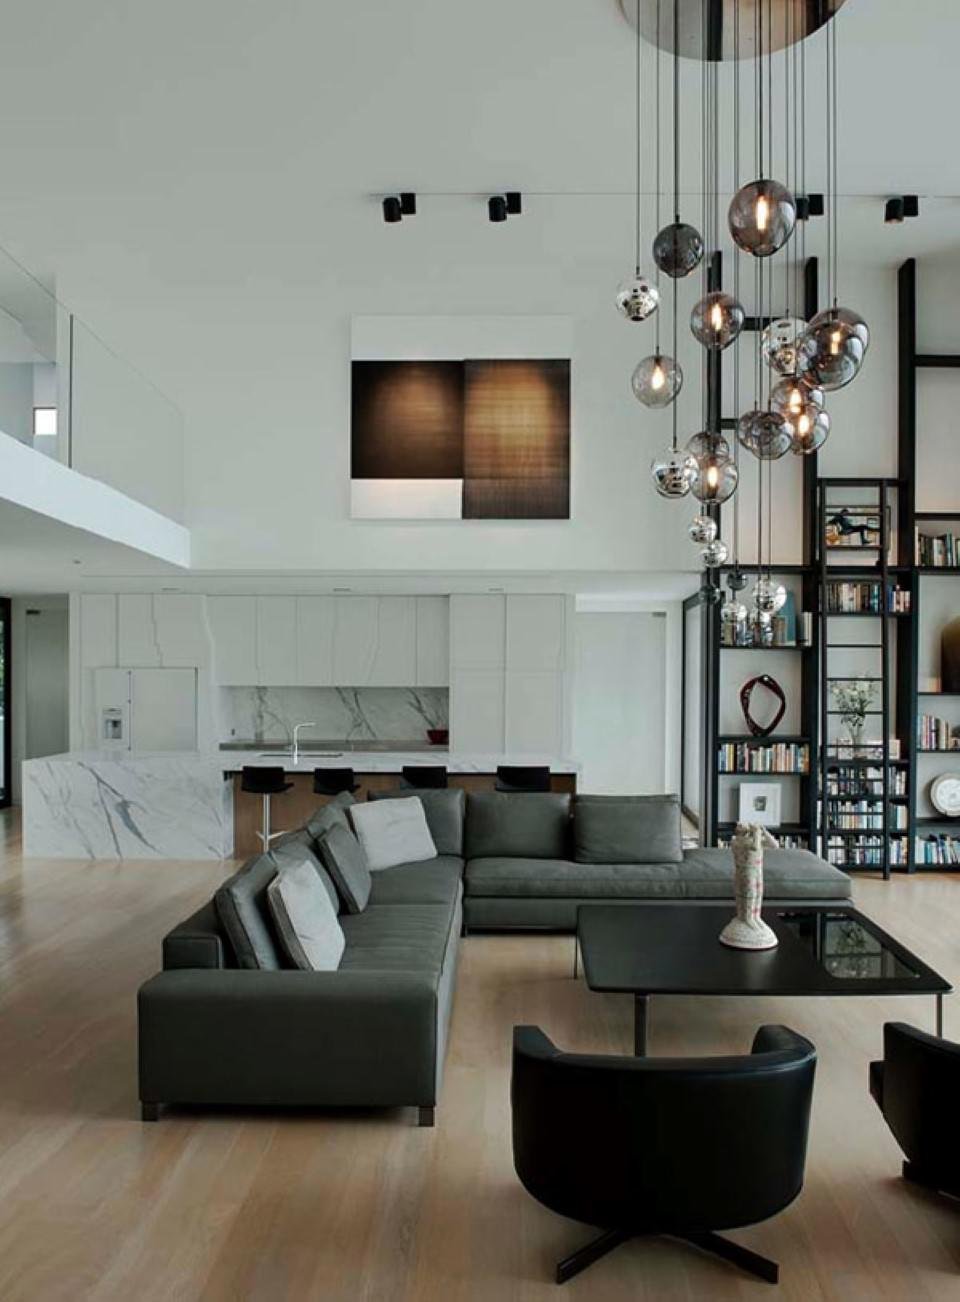 Soggiorno ultramoderno in un ambiente open space con soffitti molto alti. Arredamento, libreria e divani neri, pavimenti in legno chiaro e particolare illuminazione